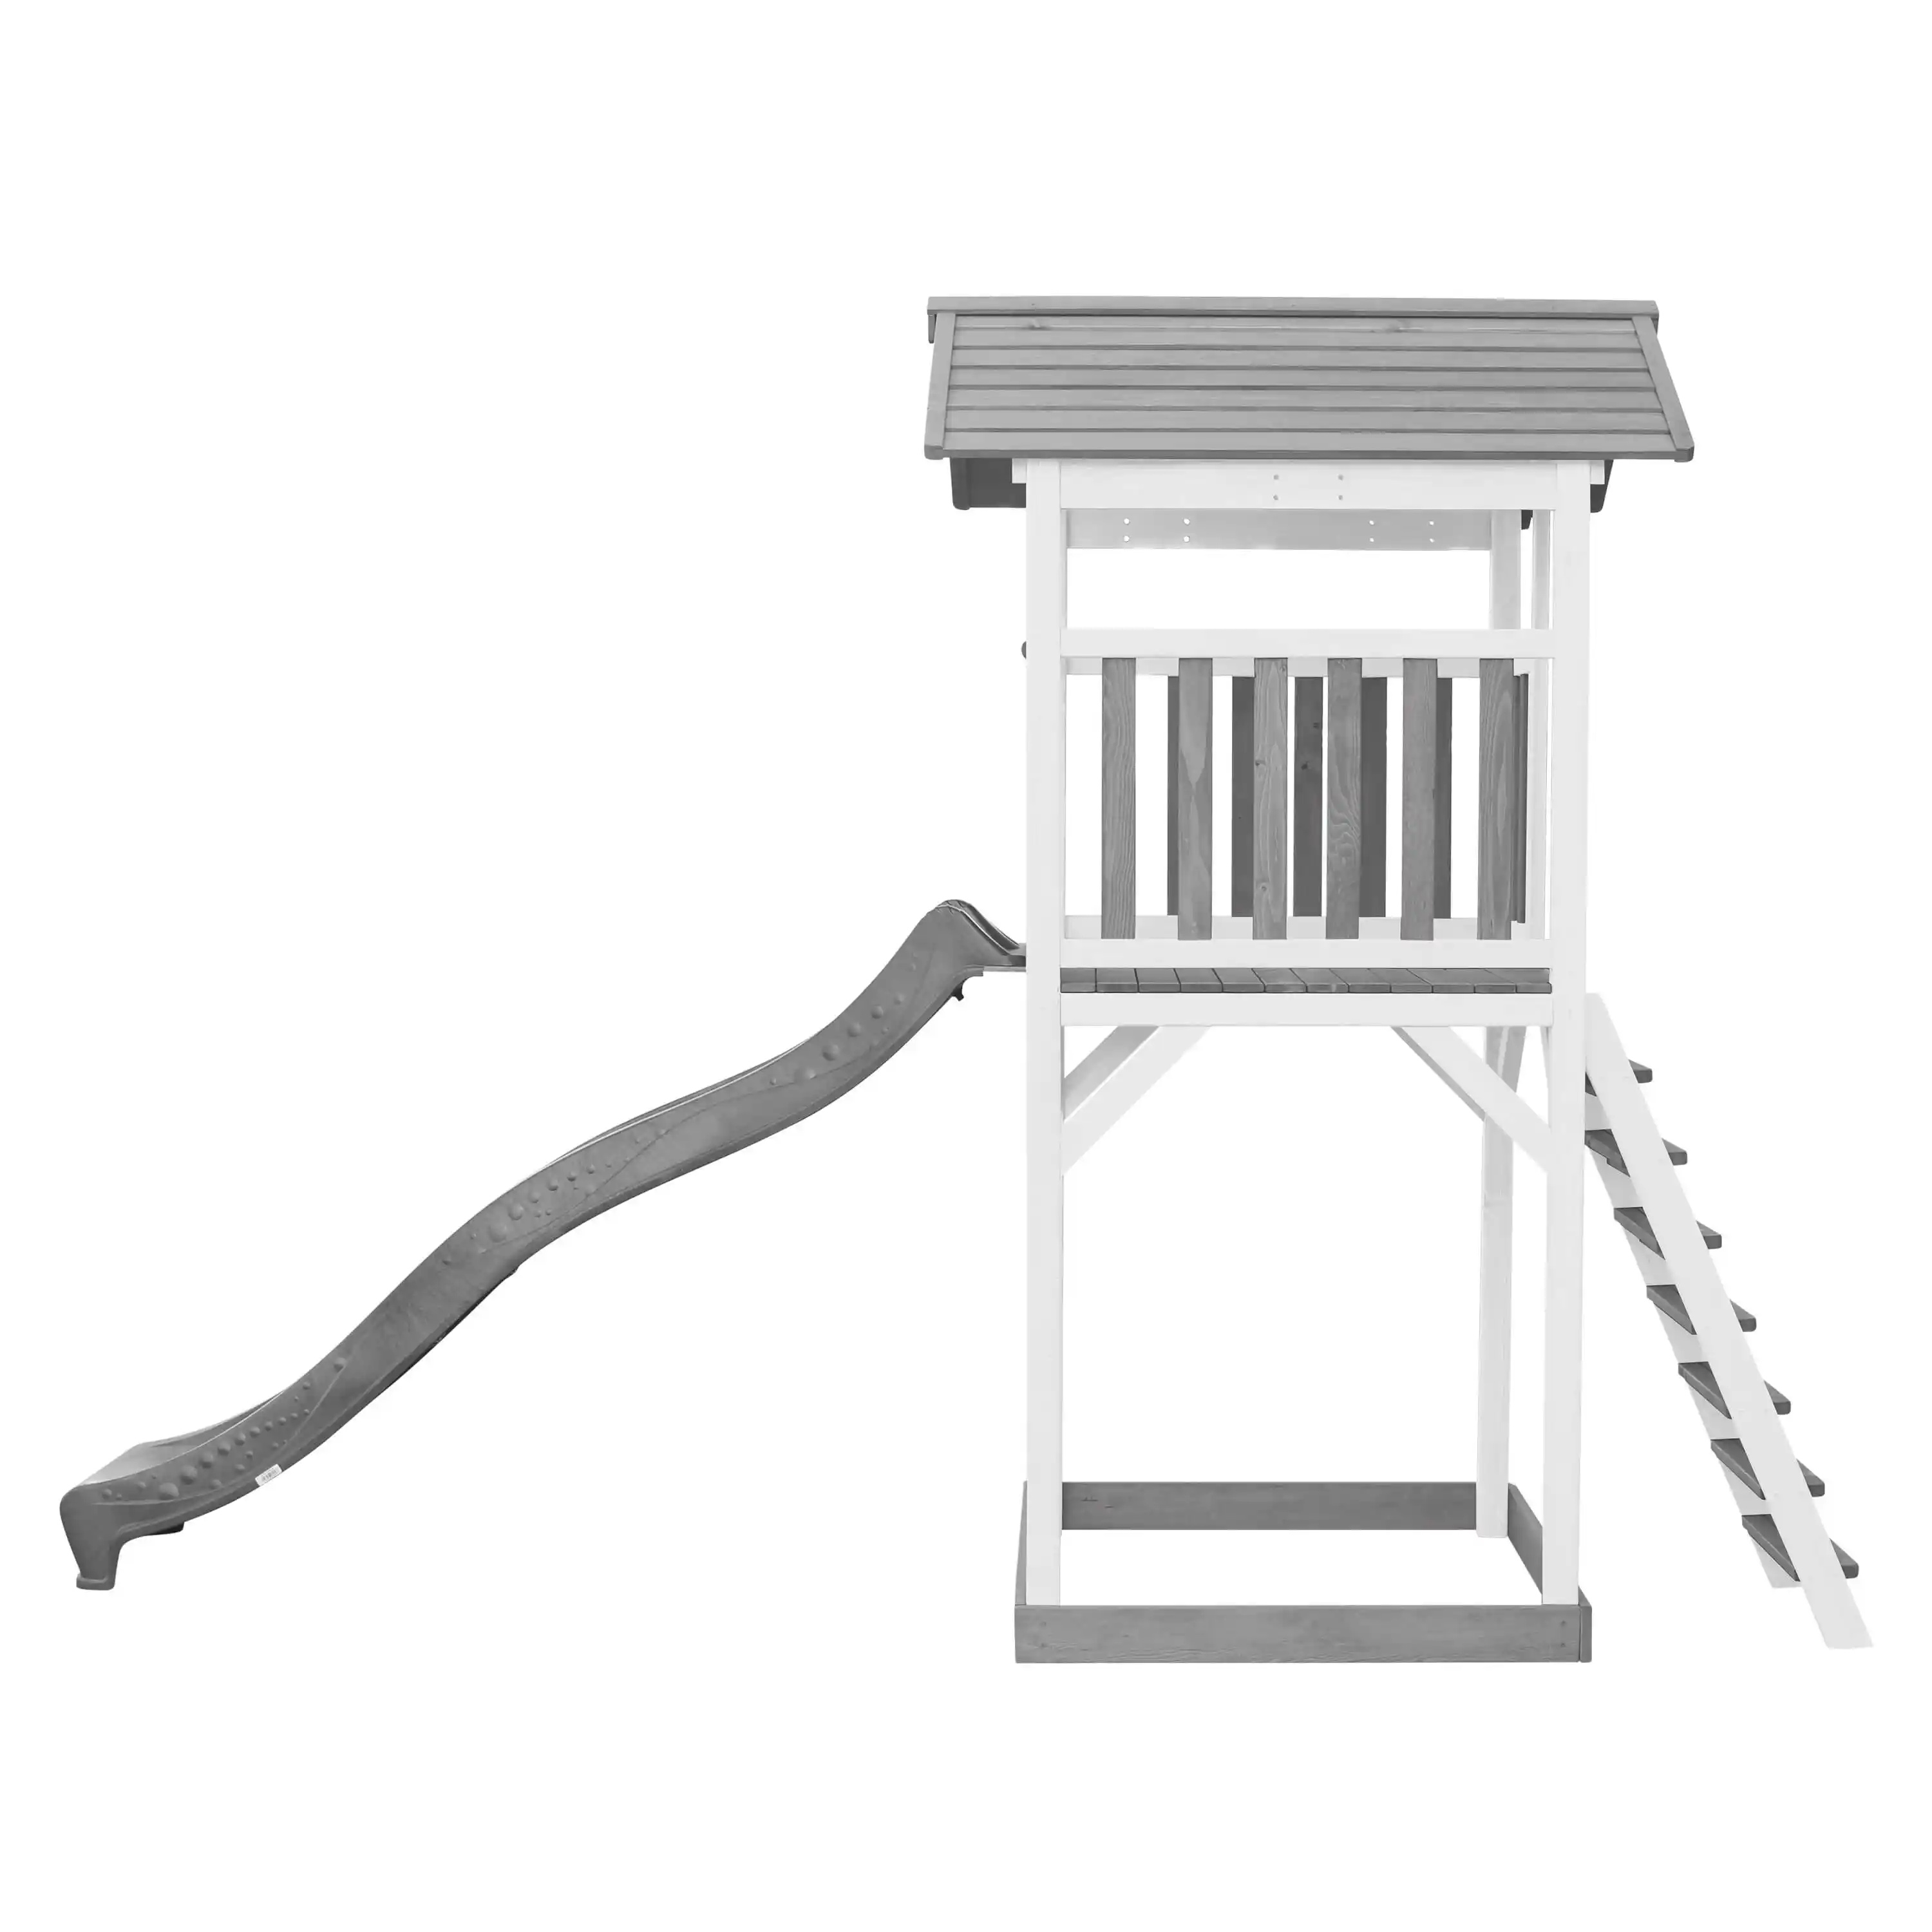 AXI Beach Tower Spielturm Grau und Weiß - Graue Rutsche